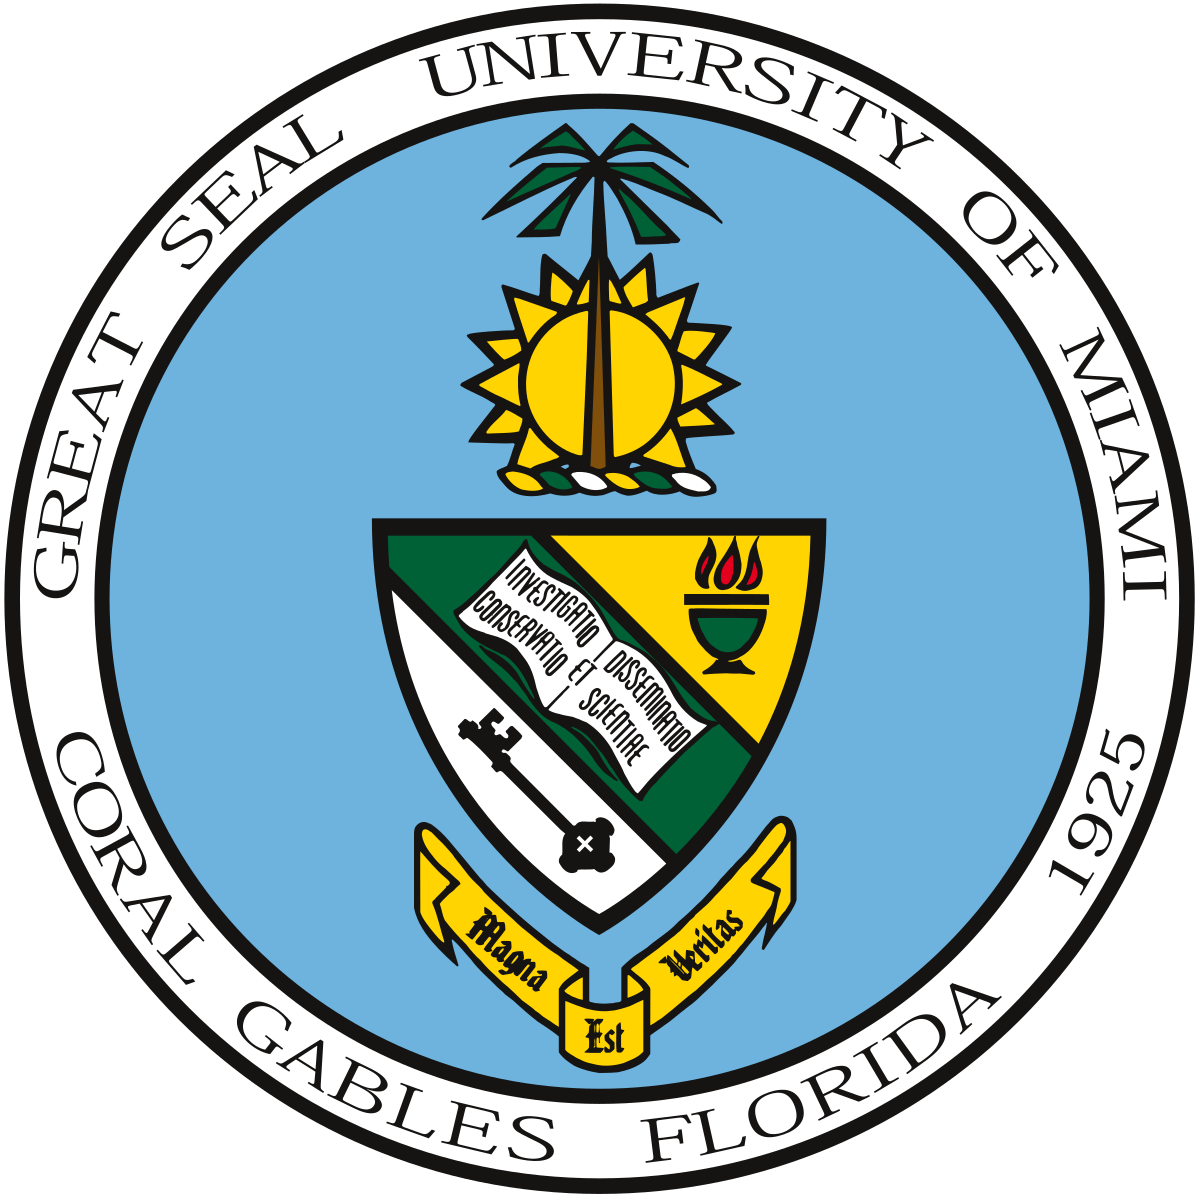 UMiami Logo - University of Miami